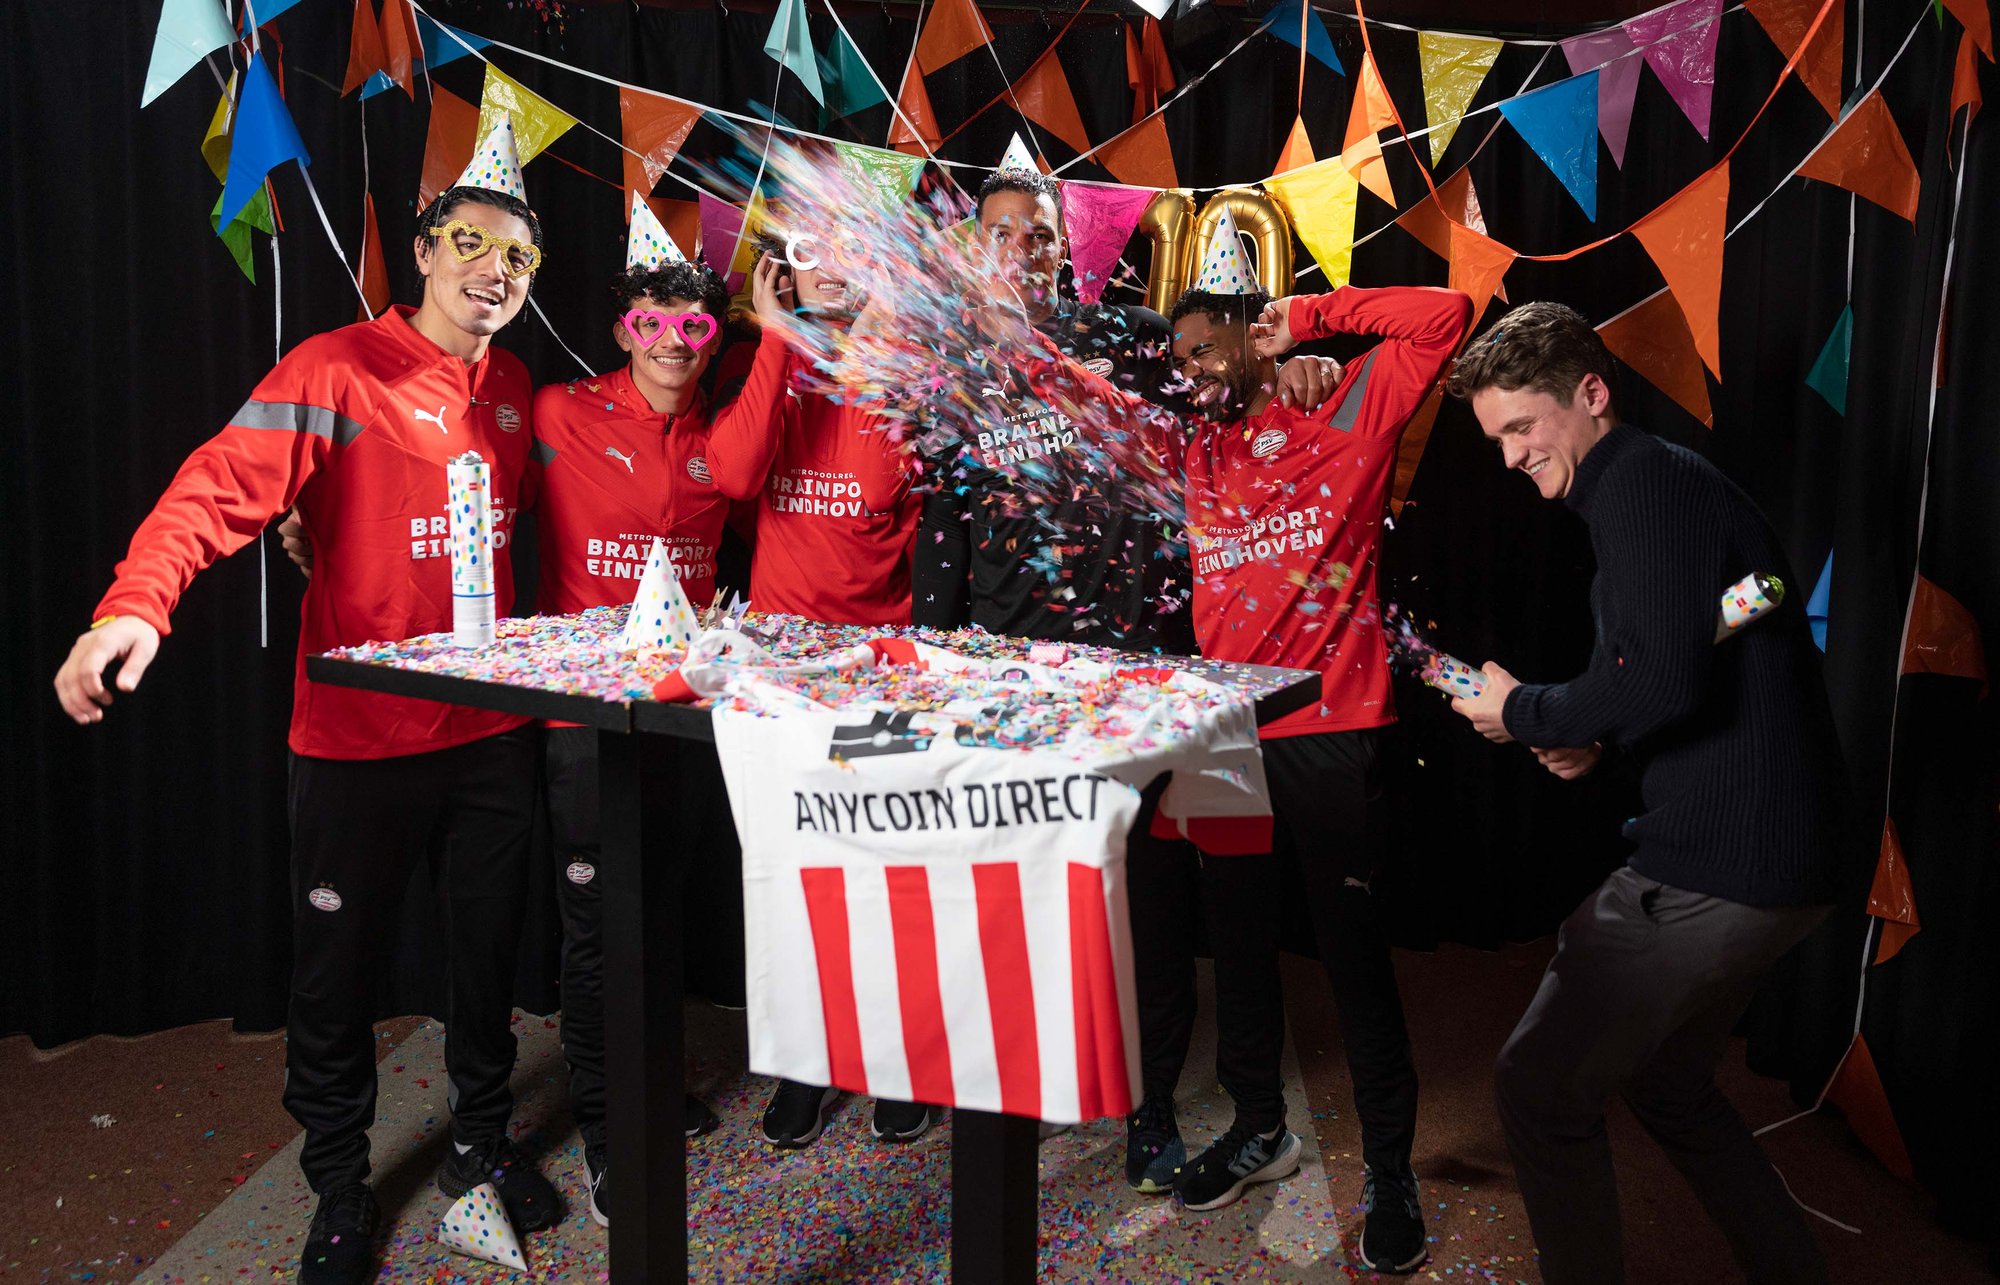 PSV spelers tijdens een contentdag voor het 10-jarig jubileum van Anycoin Direct